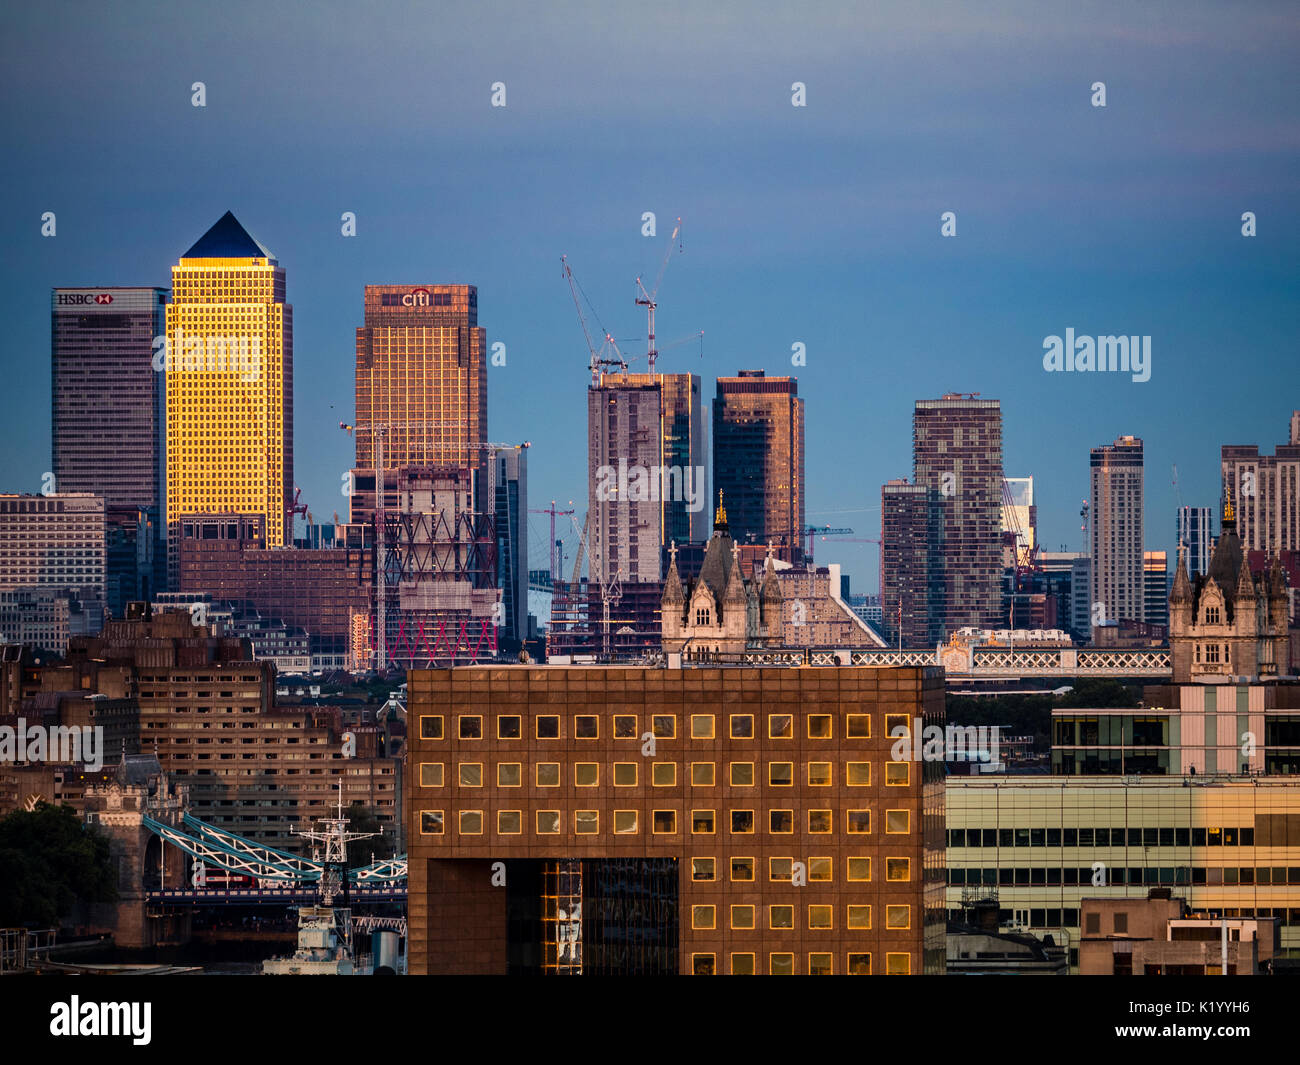 Skyline von London Londoner Stadtbild Canary Wharf Skyline oder Stadtbild bei Sonnenuntergang Stockfoto